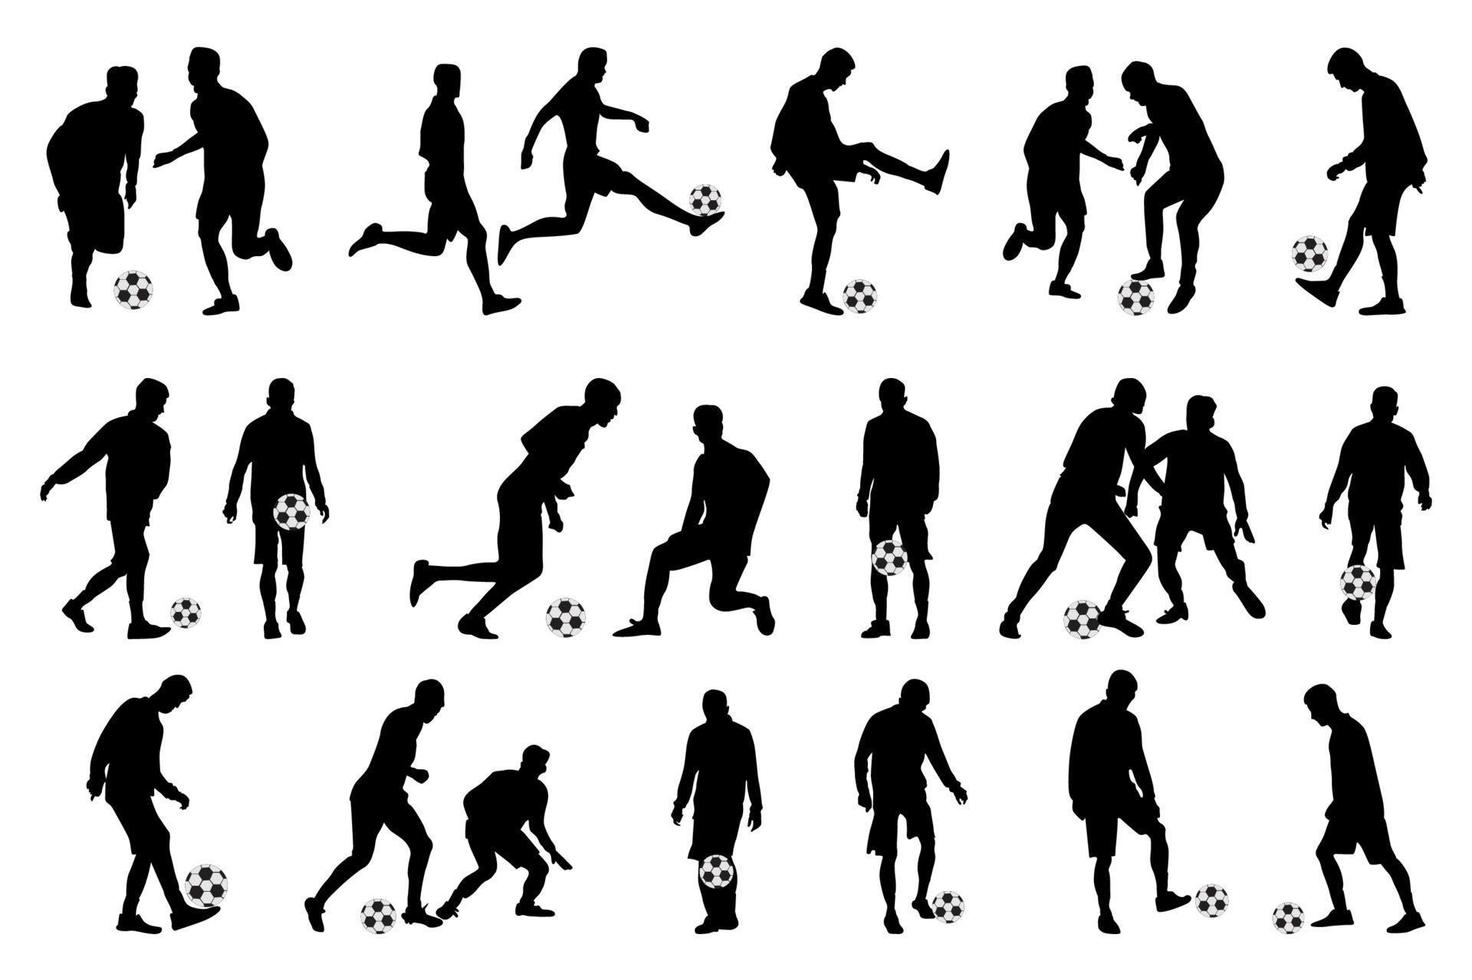 juego de fútbol, jugadores de fútbol, fútbol, fútbol, silueta de jugadores vector